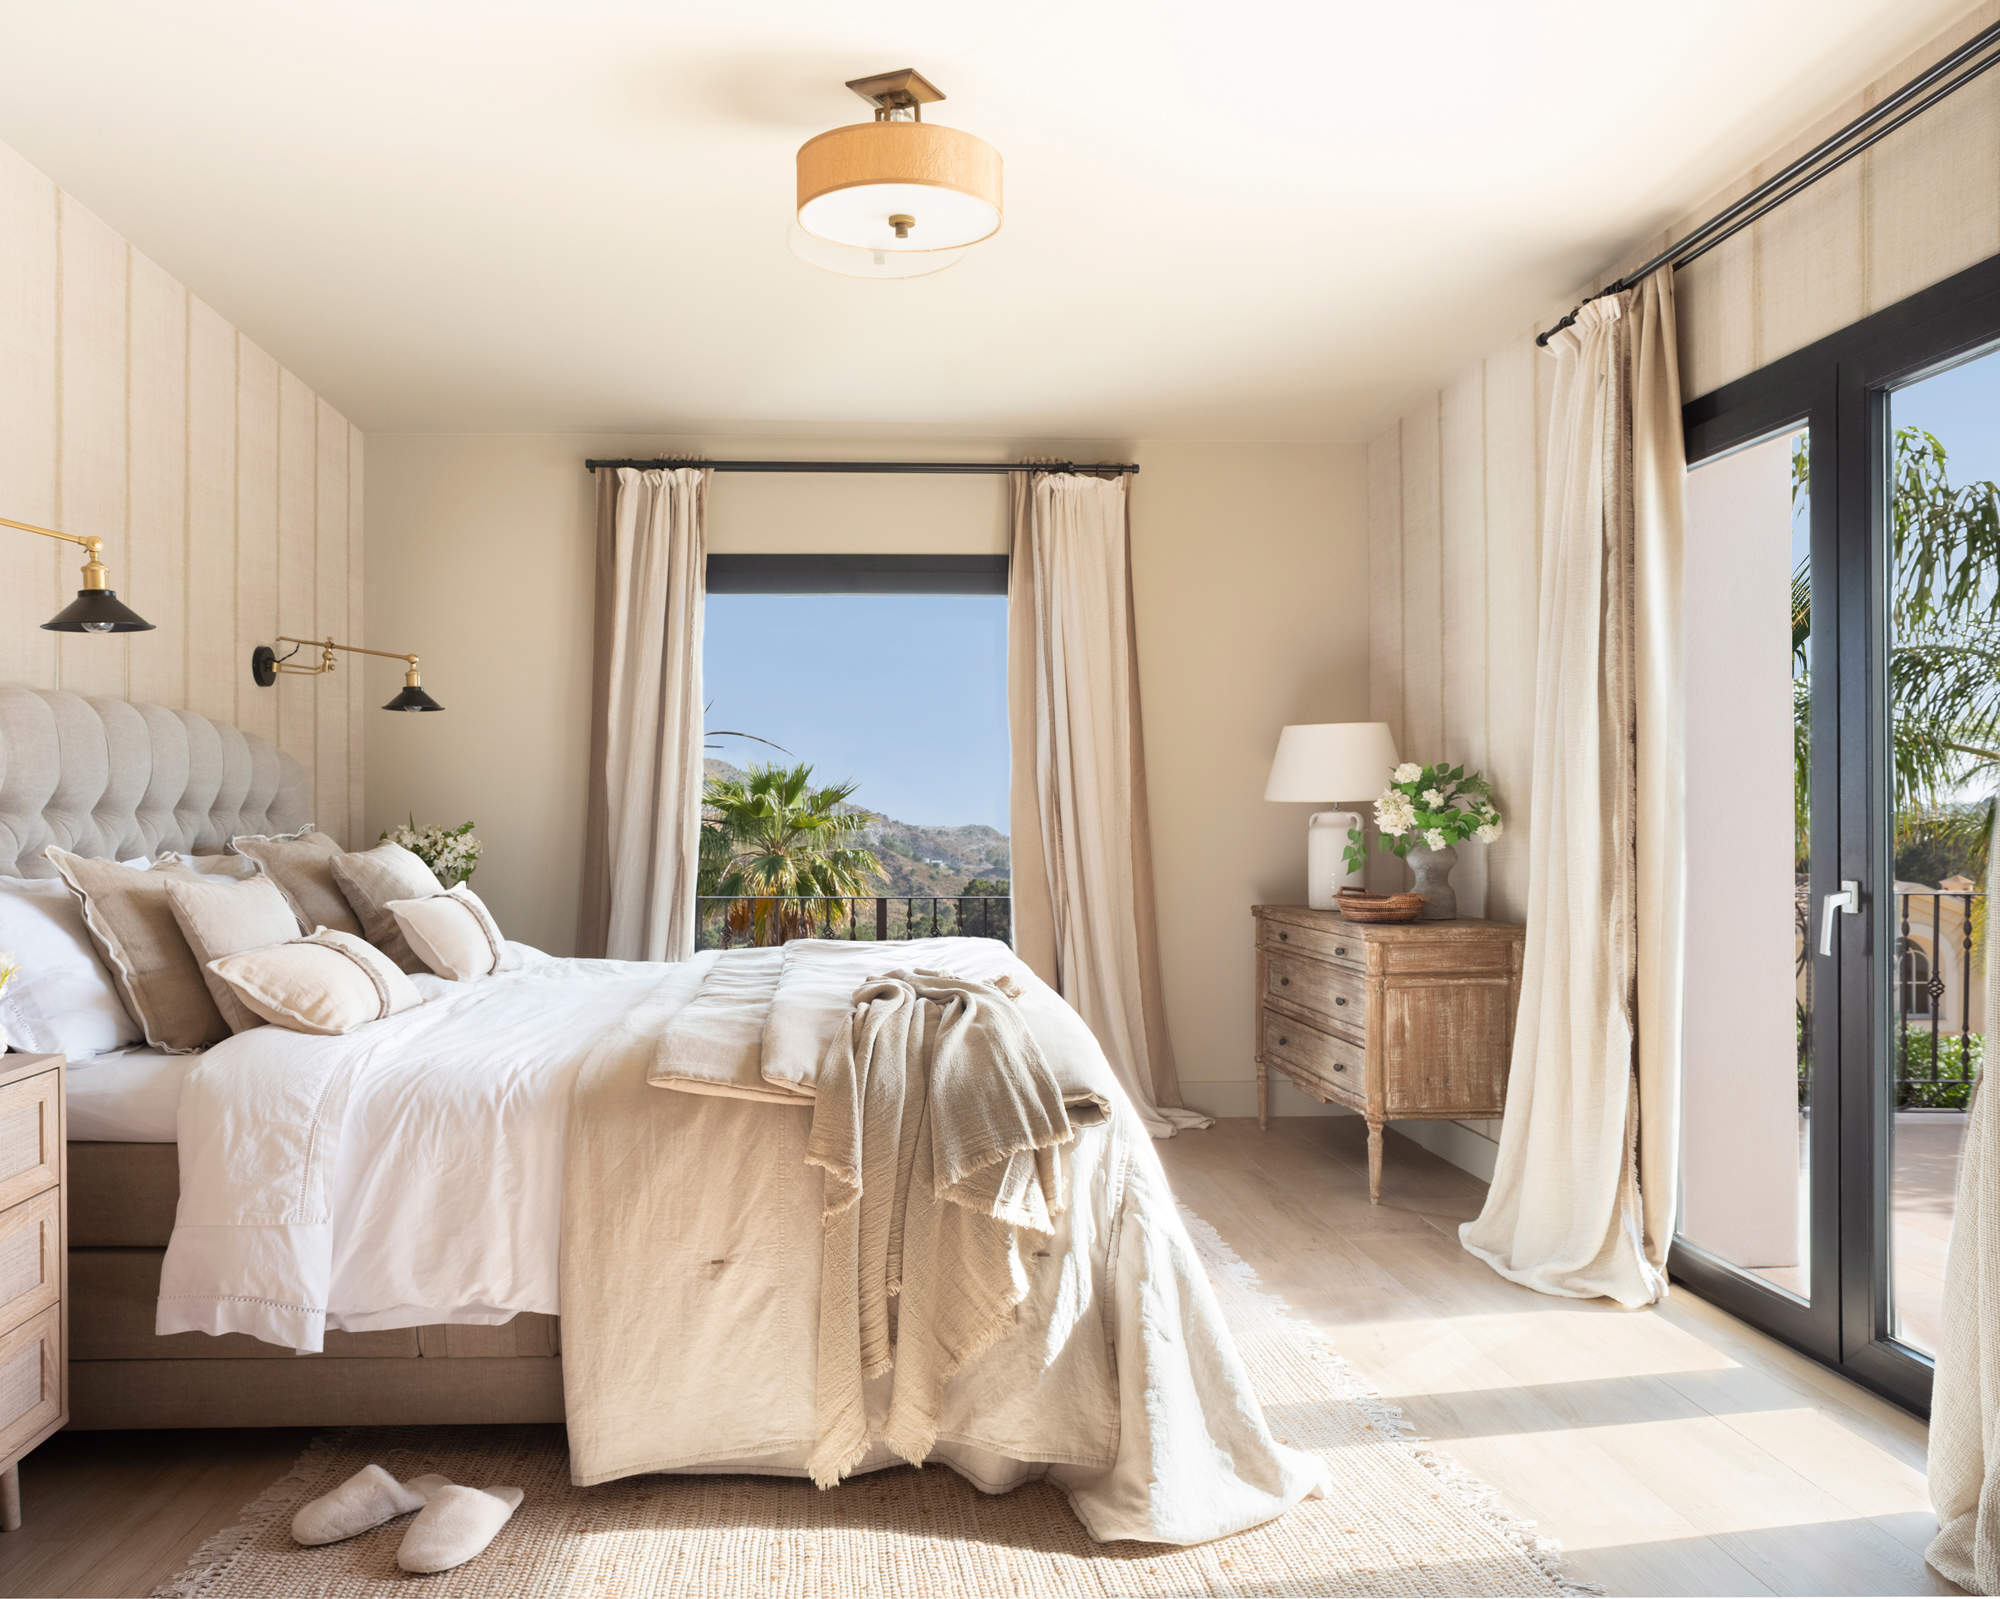 Dormitorio moderno con cómoda antigua y cortinas arrastrando